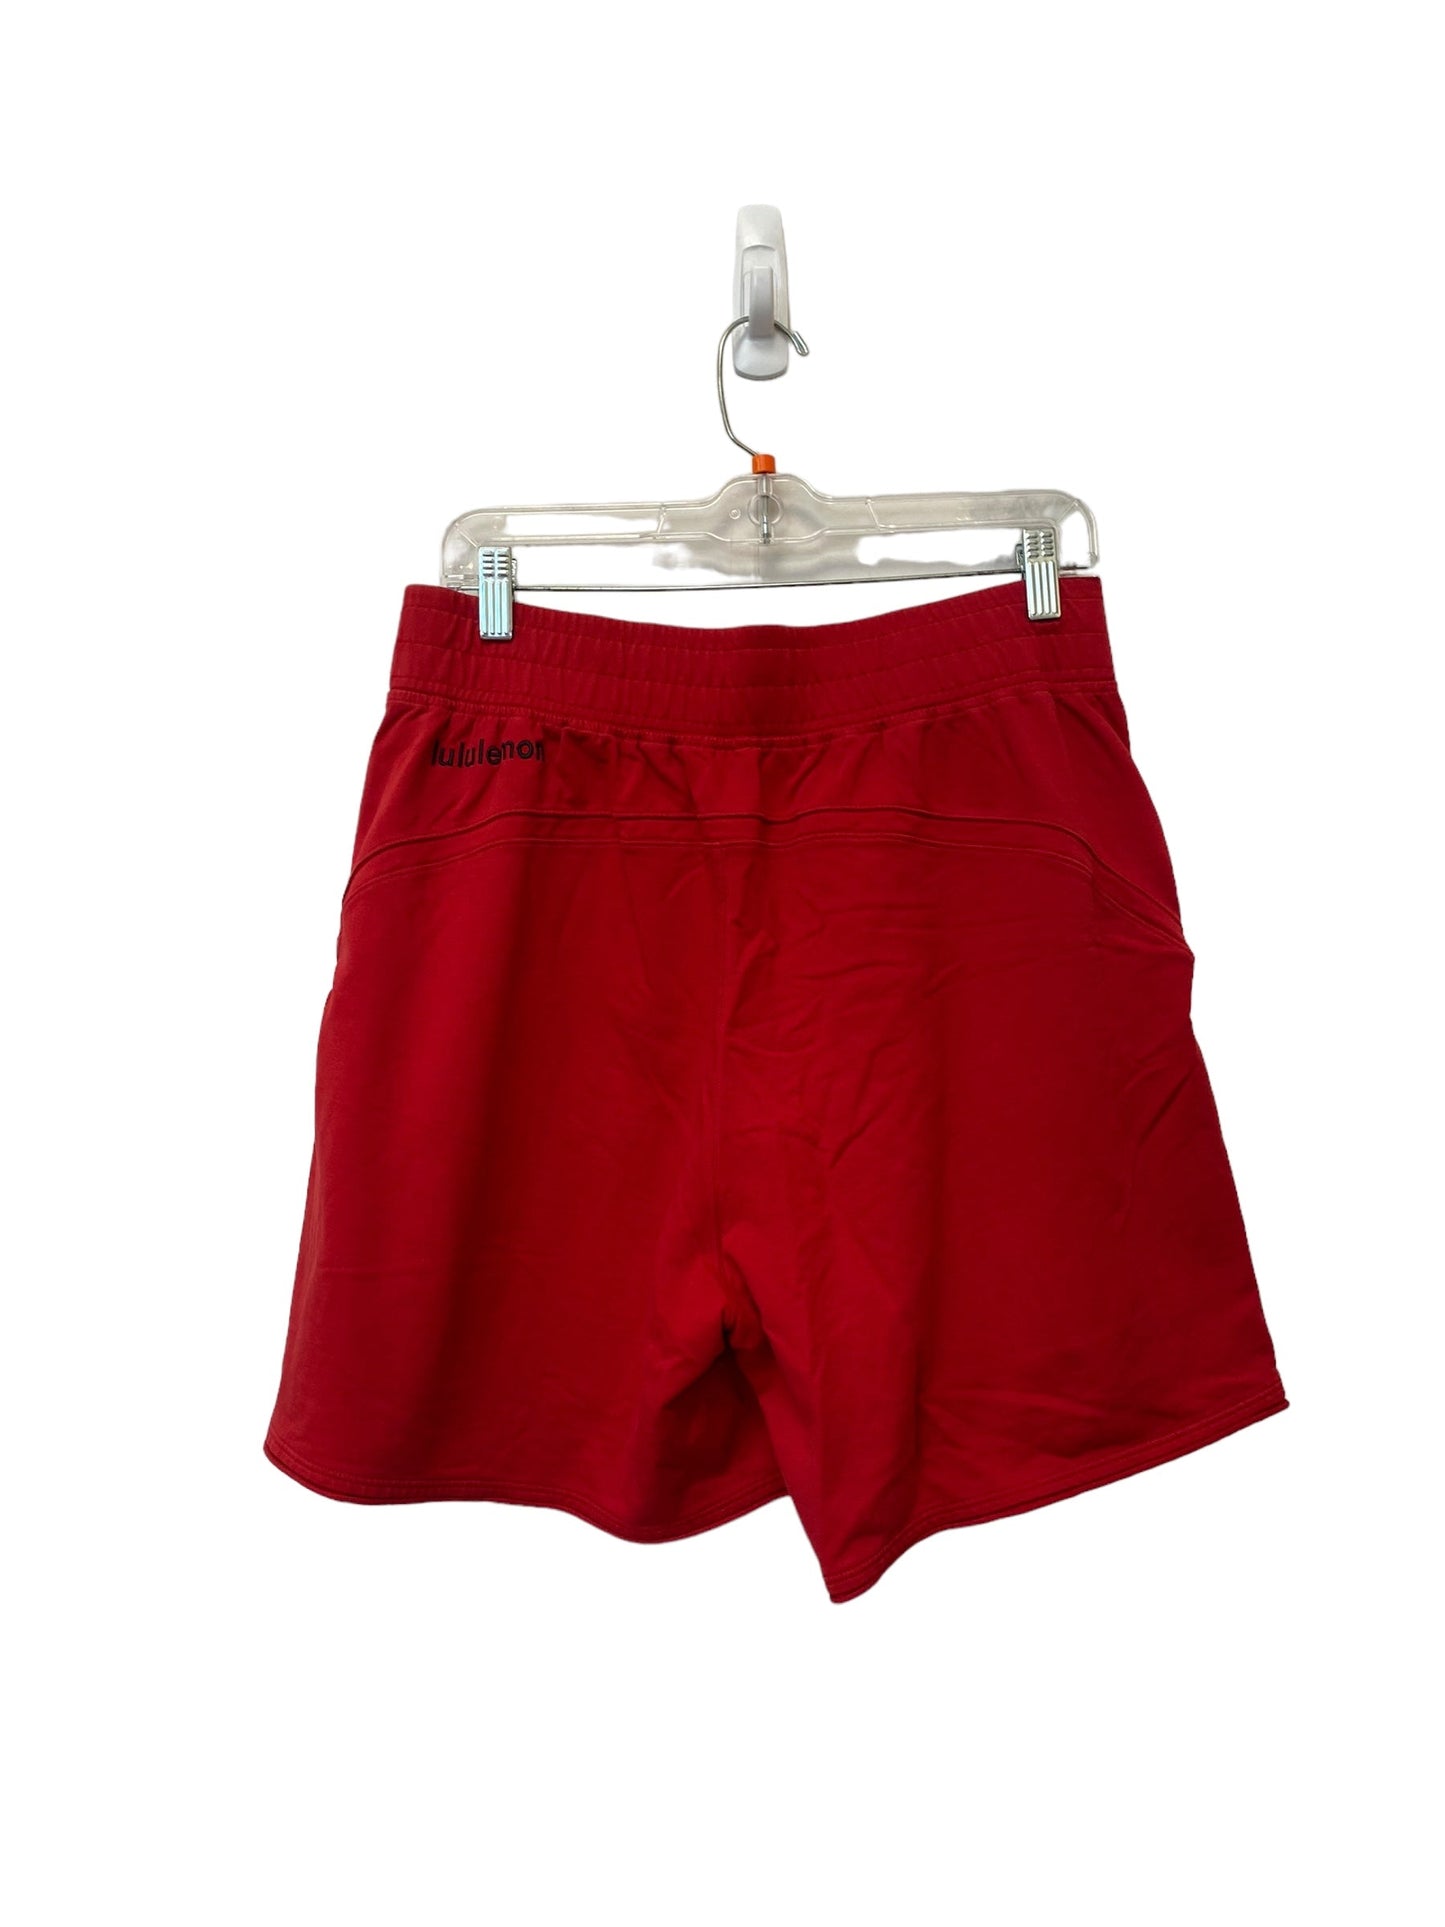 Red Athletic Shorts Lululemon, Size 10